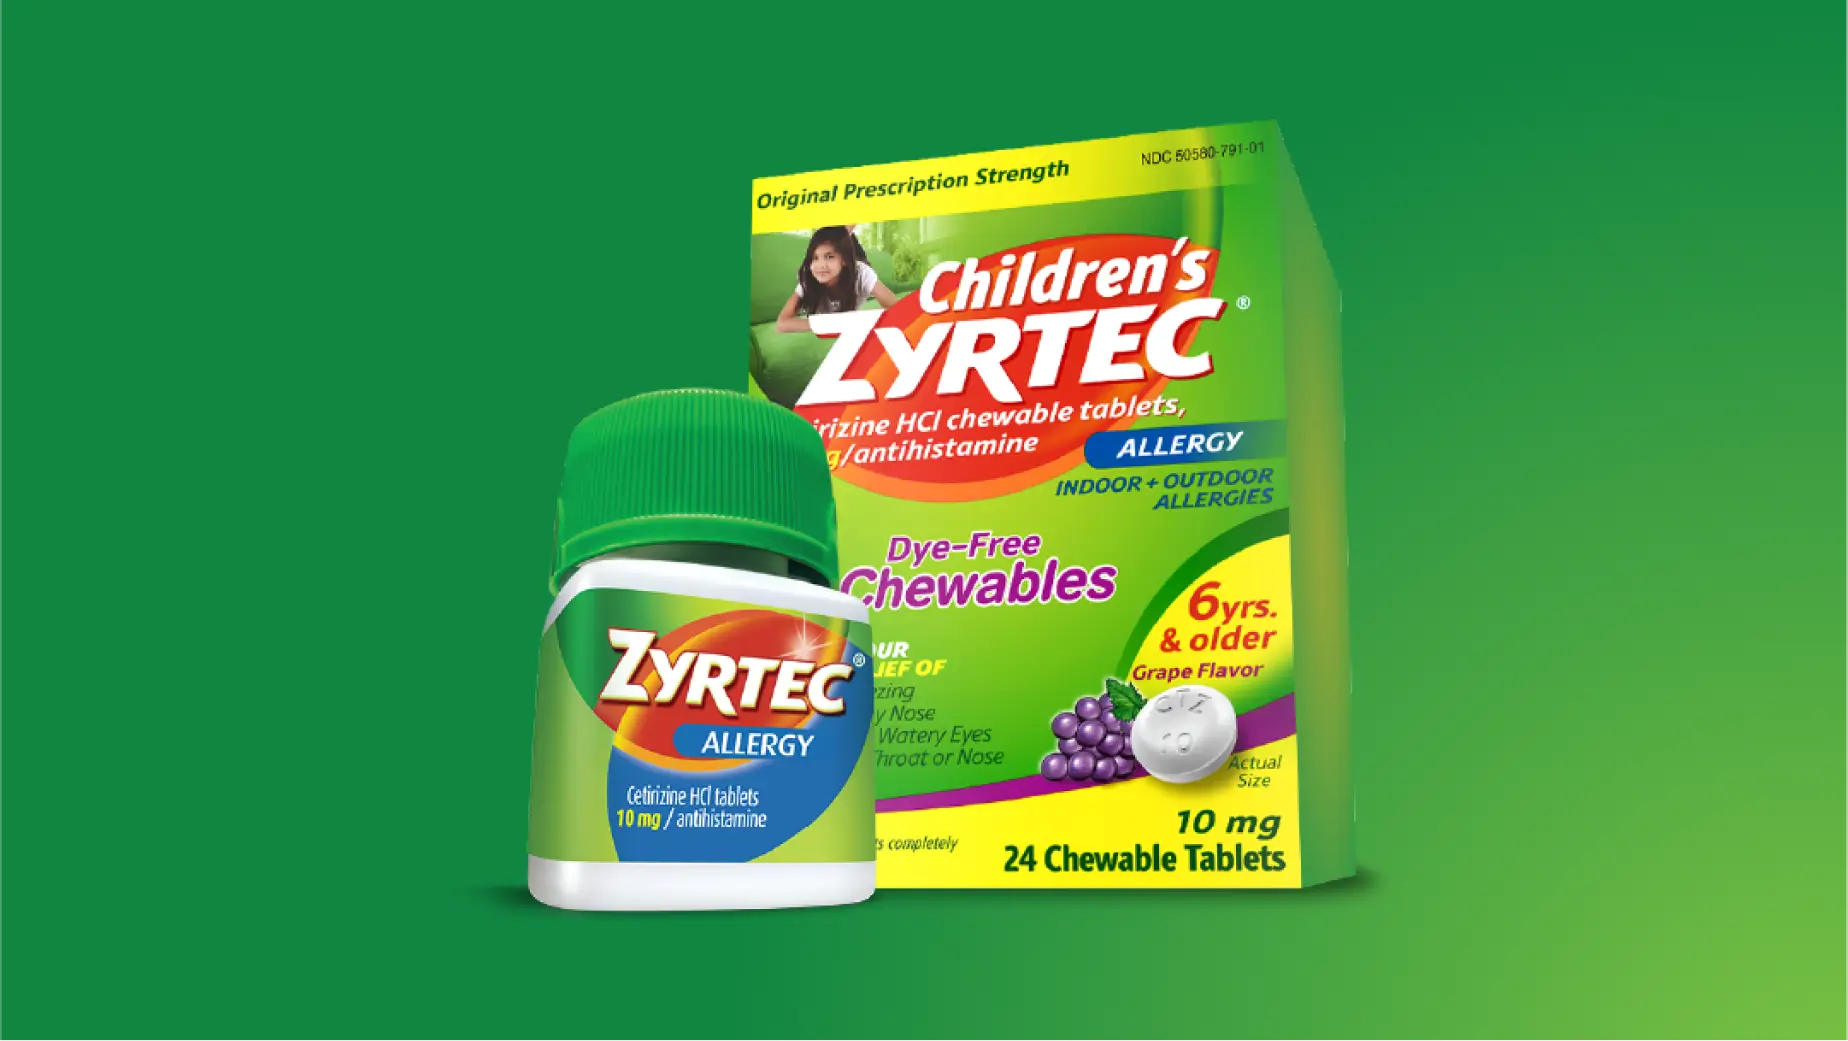 Frasco de pastillas ZYRTEC® y envase de pastillas masticables ZYRTEC® para niños